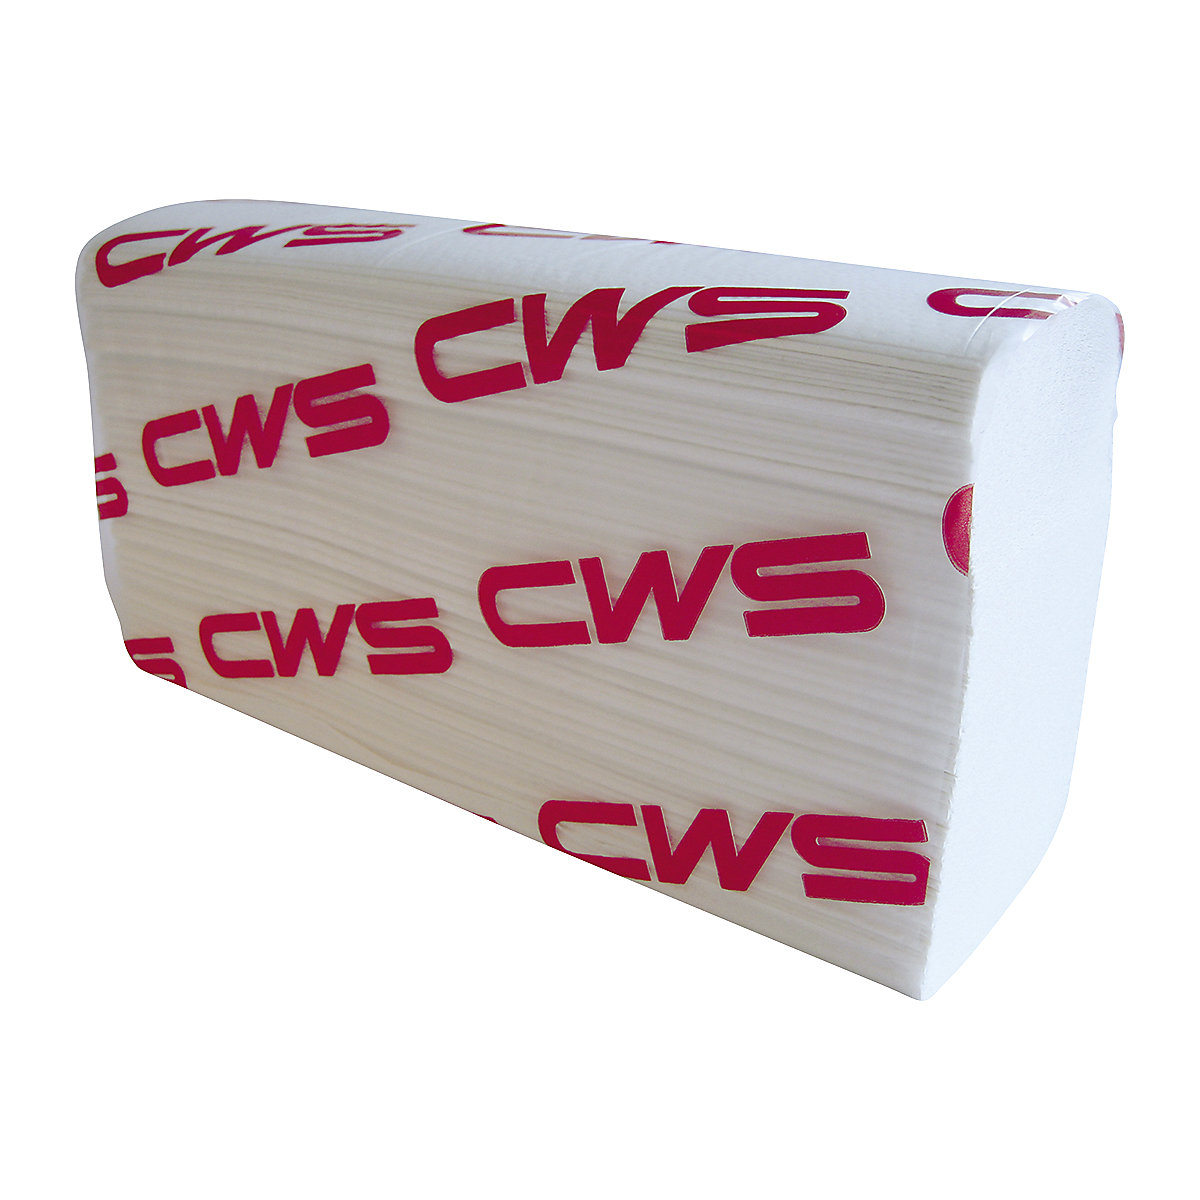 Hajtogatott papírtörlő, Multifold - CWS